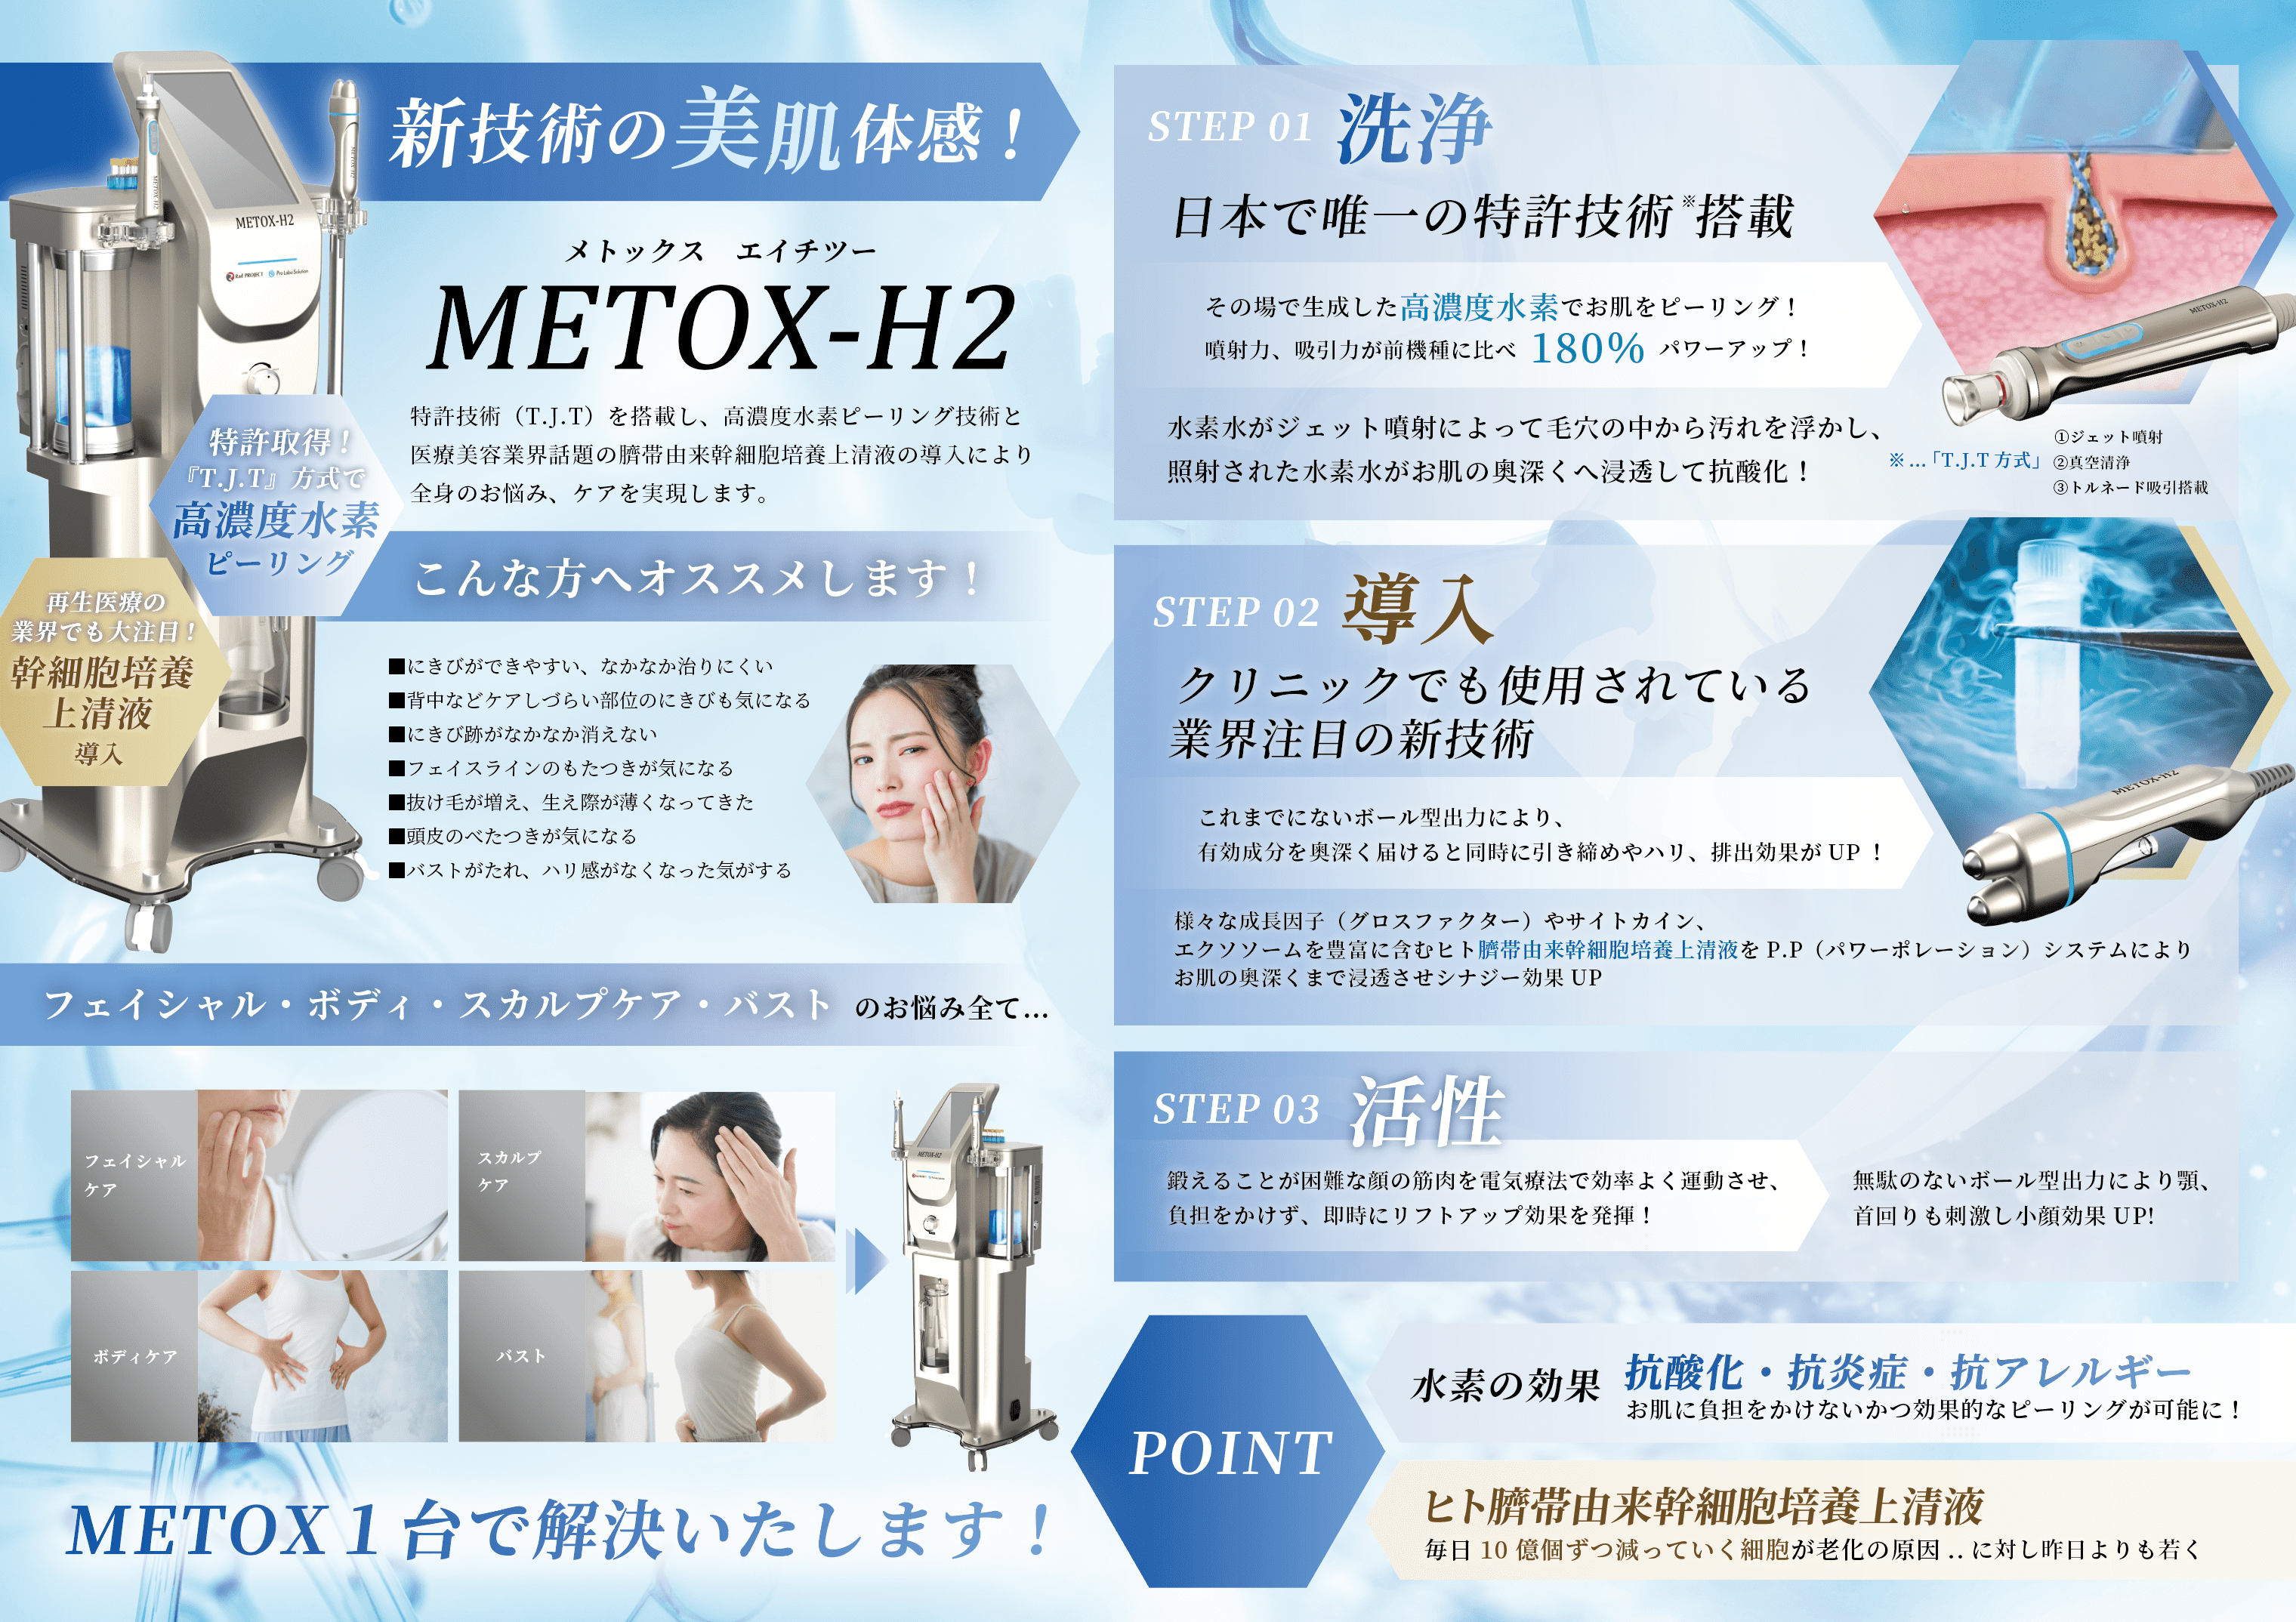 METOX-H2 チラシ